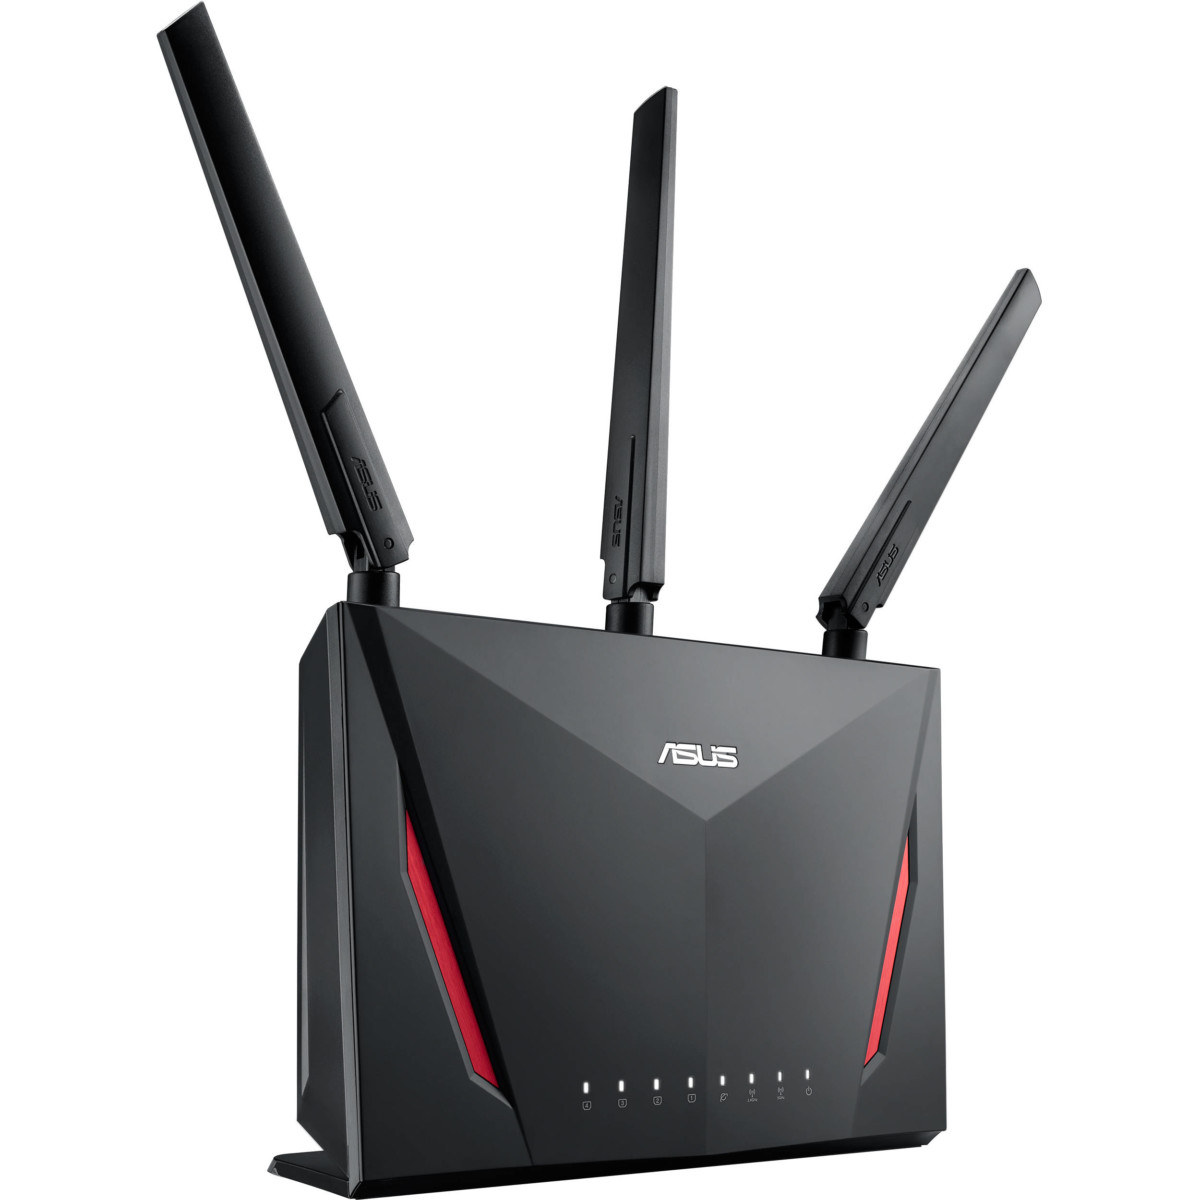 gennemsnit hellige opføre sig TEST: Asus RT-AC86U - En god Wi-Fi router! - recordere.dk